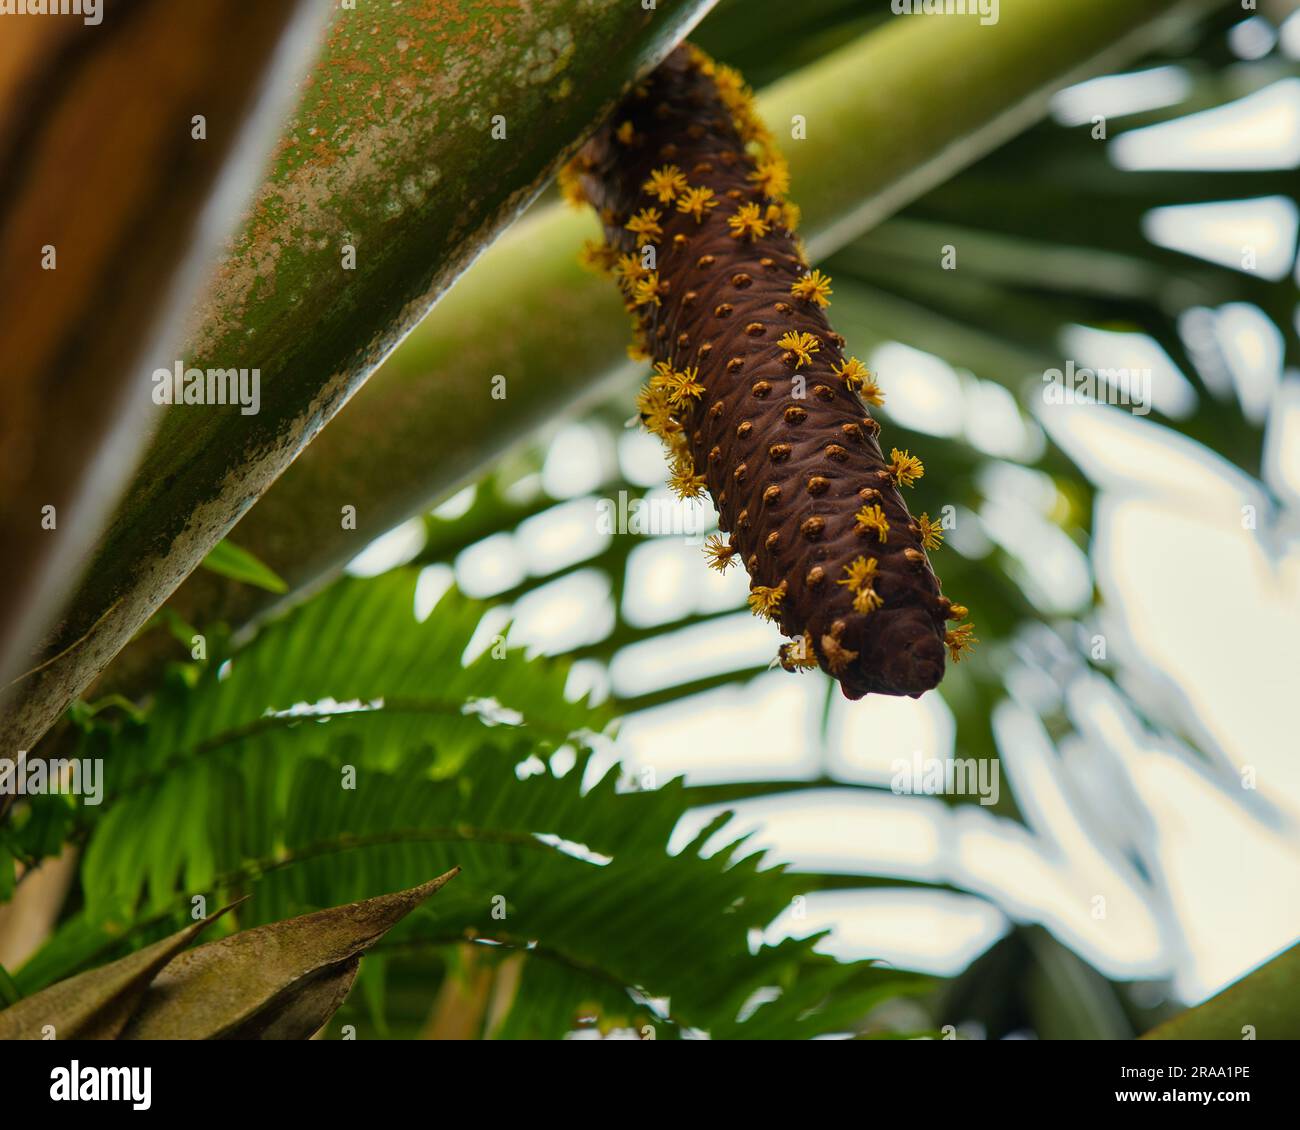 Der männliche Coco de mer Tree, die gelben Blüten auf dem Männchen, zeigt, dass er fruchtbar ist. Mit Wind können Eidechsen und Bienen die weiblichen Bäume bestäuben Stockfoto